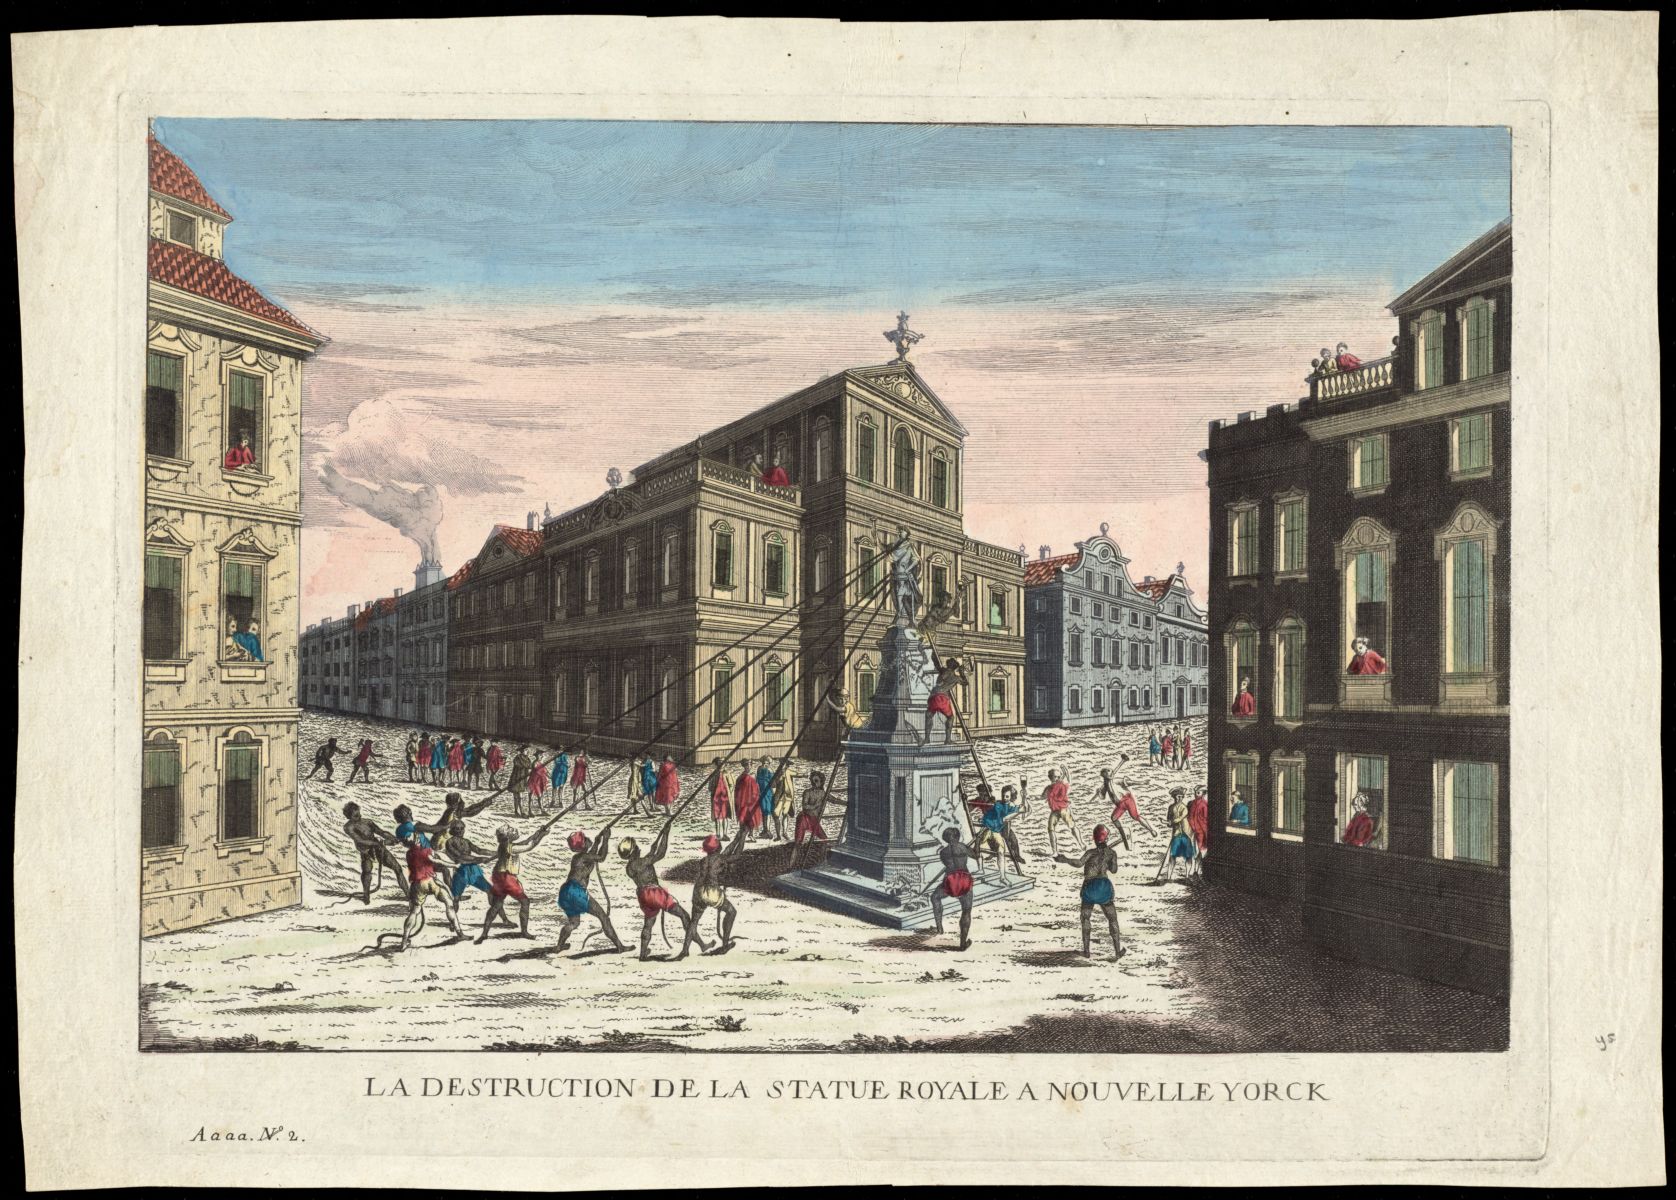 La destruction de la statue royale a Nouvelle Yorck (1778)